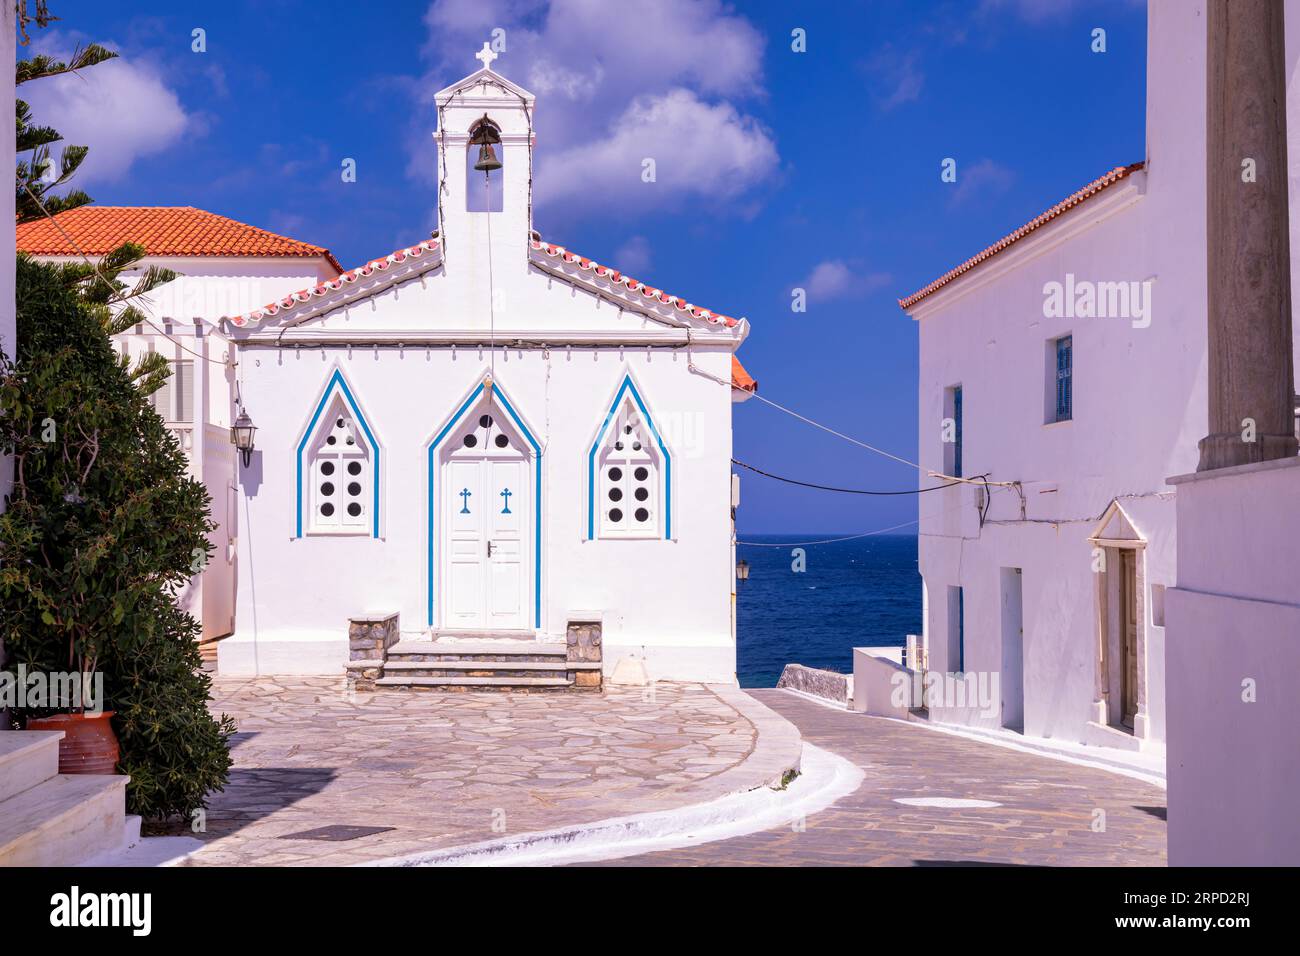 Holy church of Saint Barbara, Andros, Greece Stock Photo